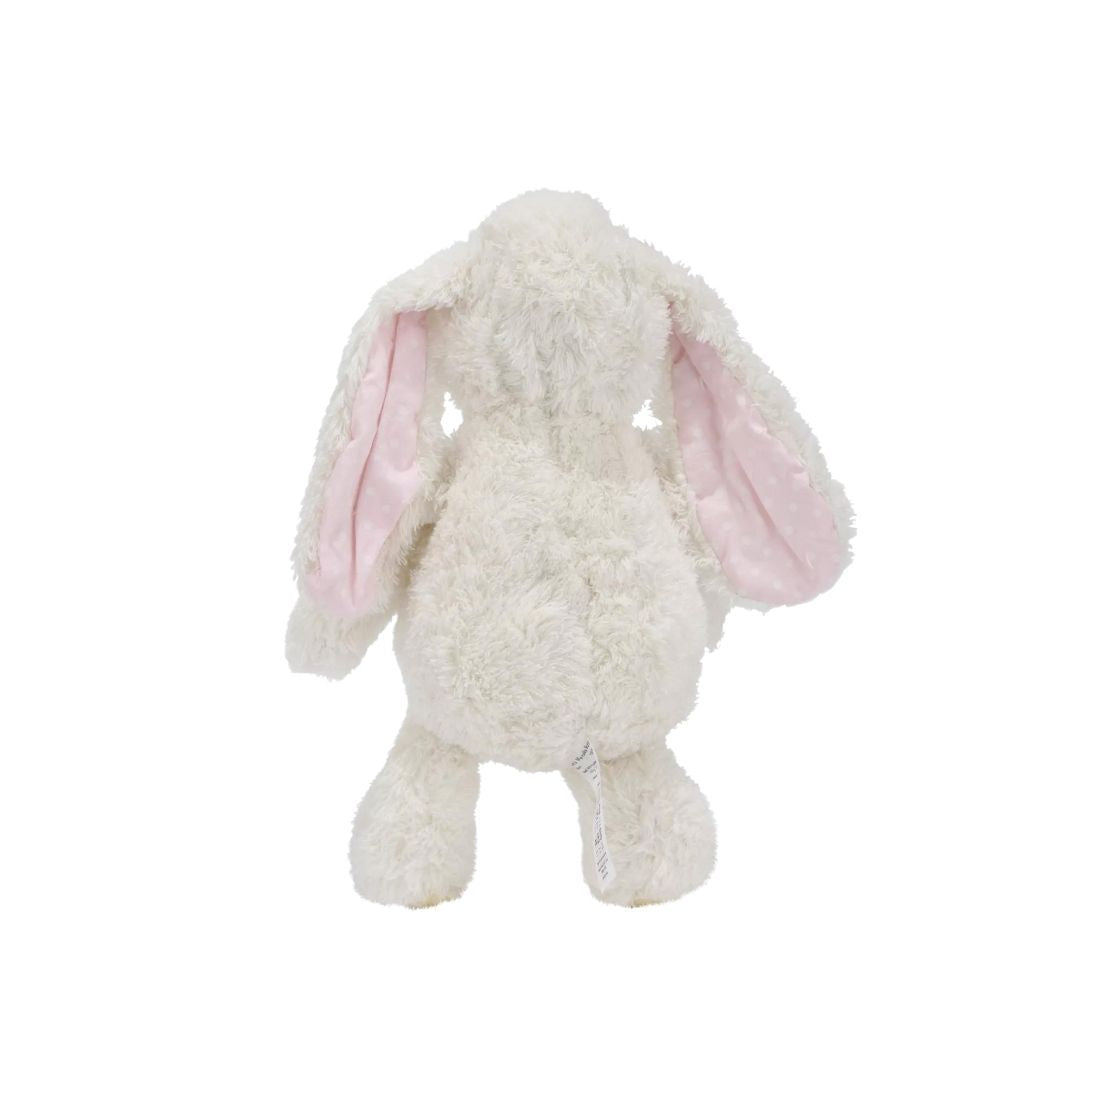 Plush White Bunny Toy